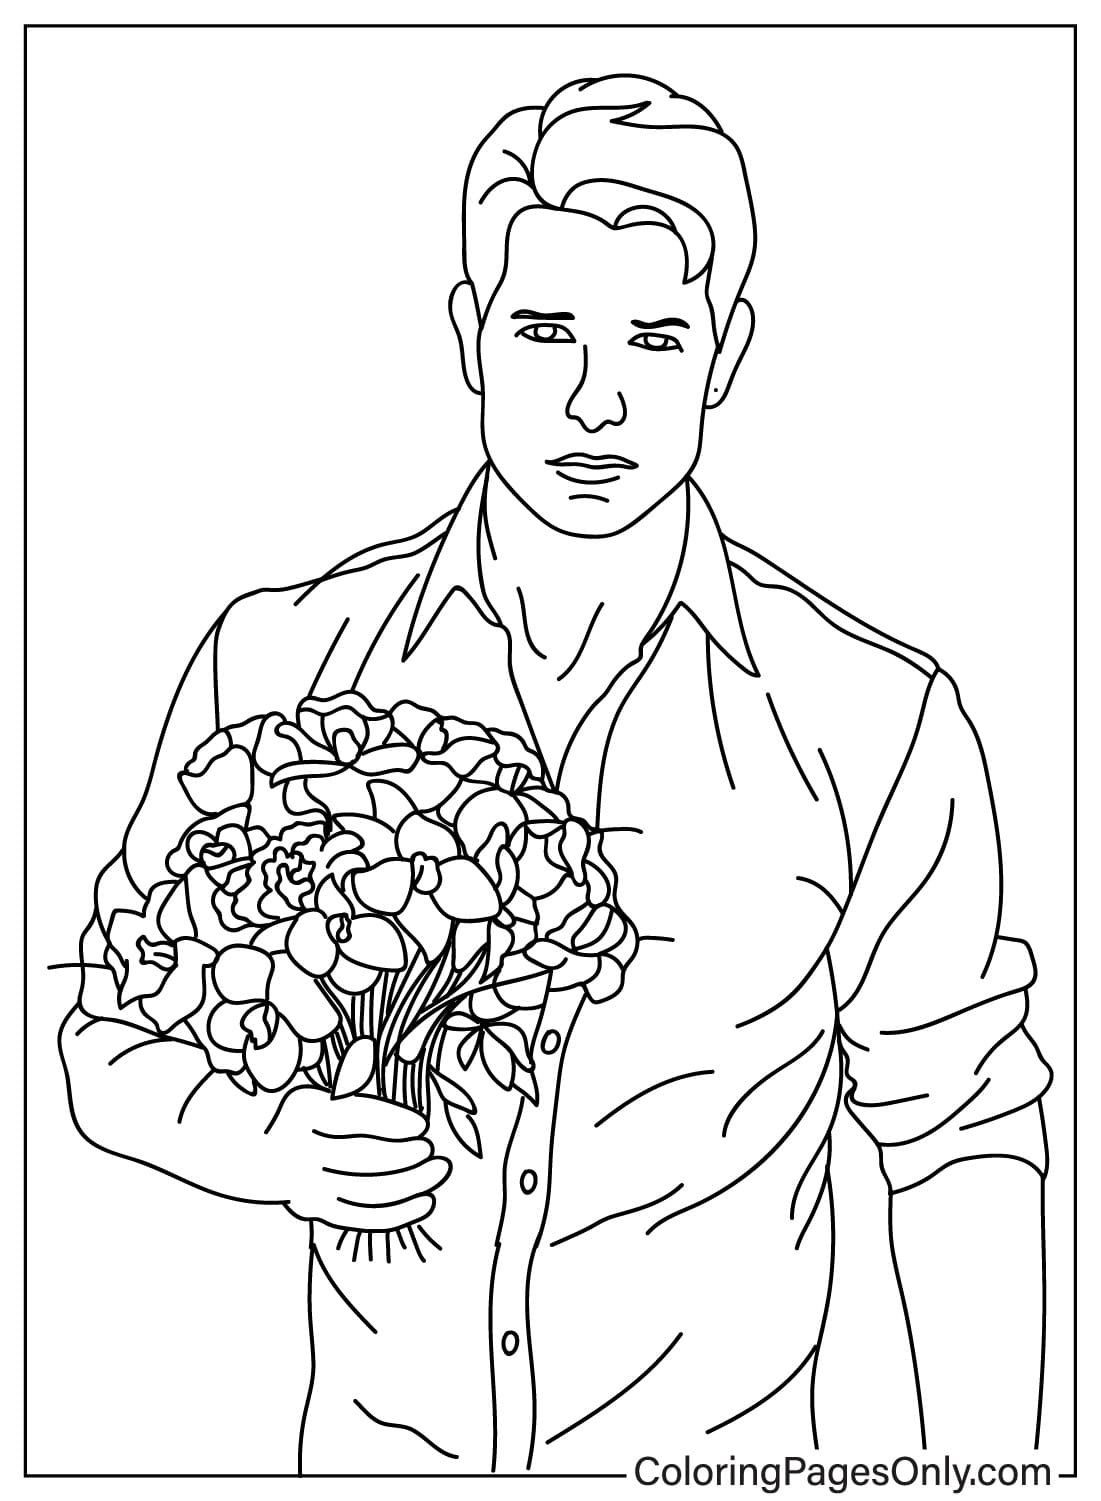 Página para colorear de Tom Cruise para imprimir gratis de Tom Cruise